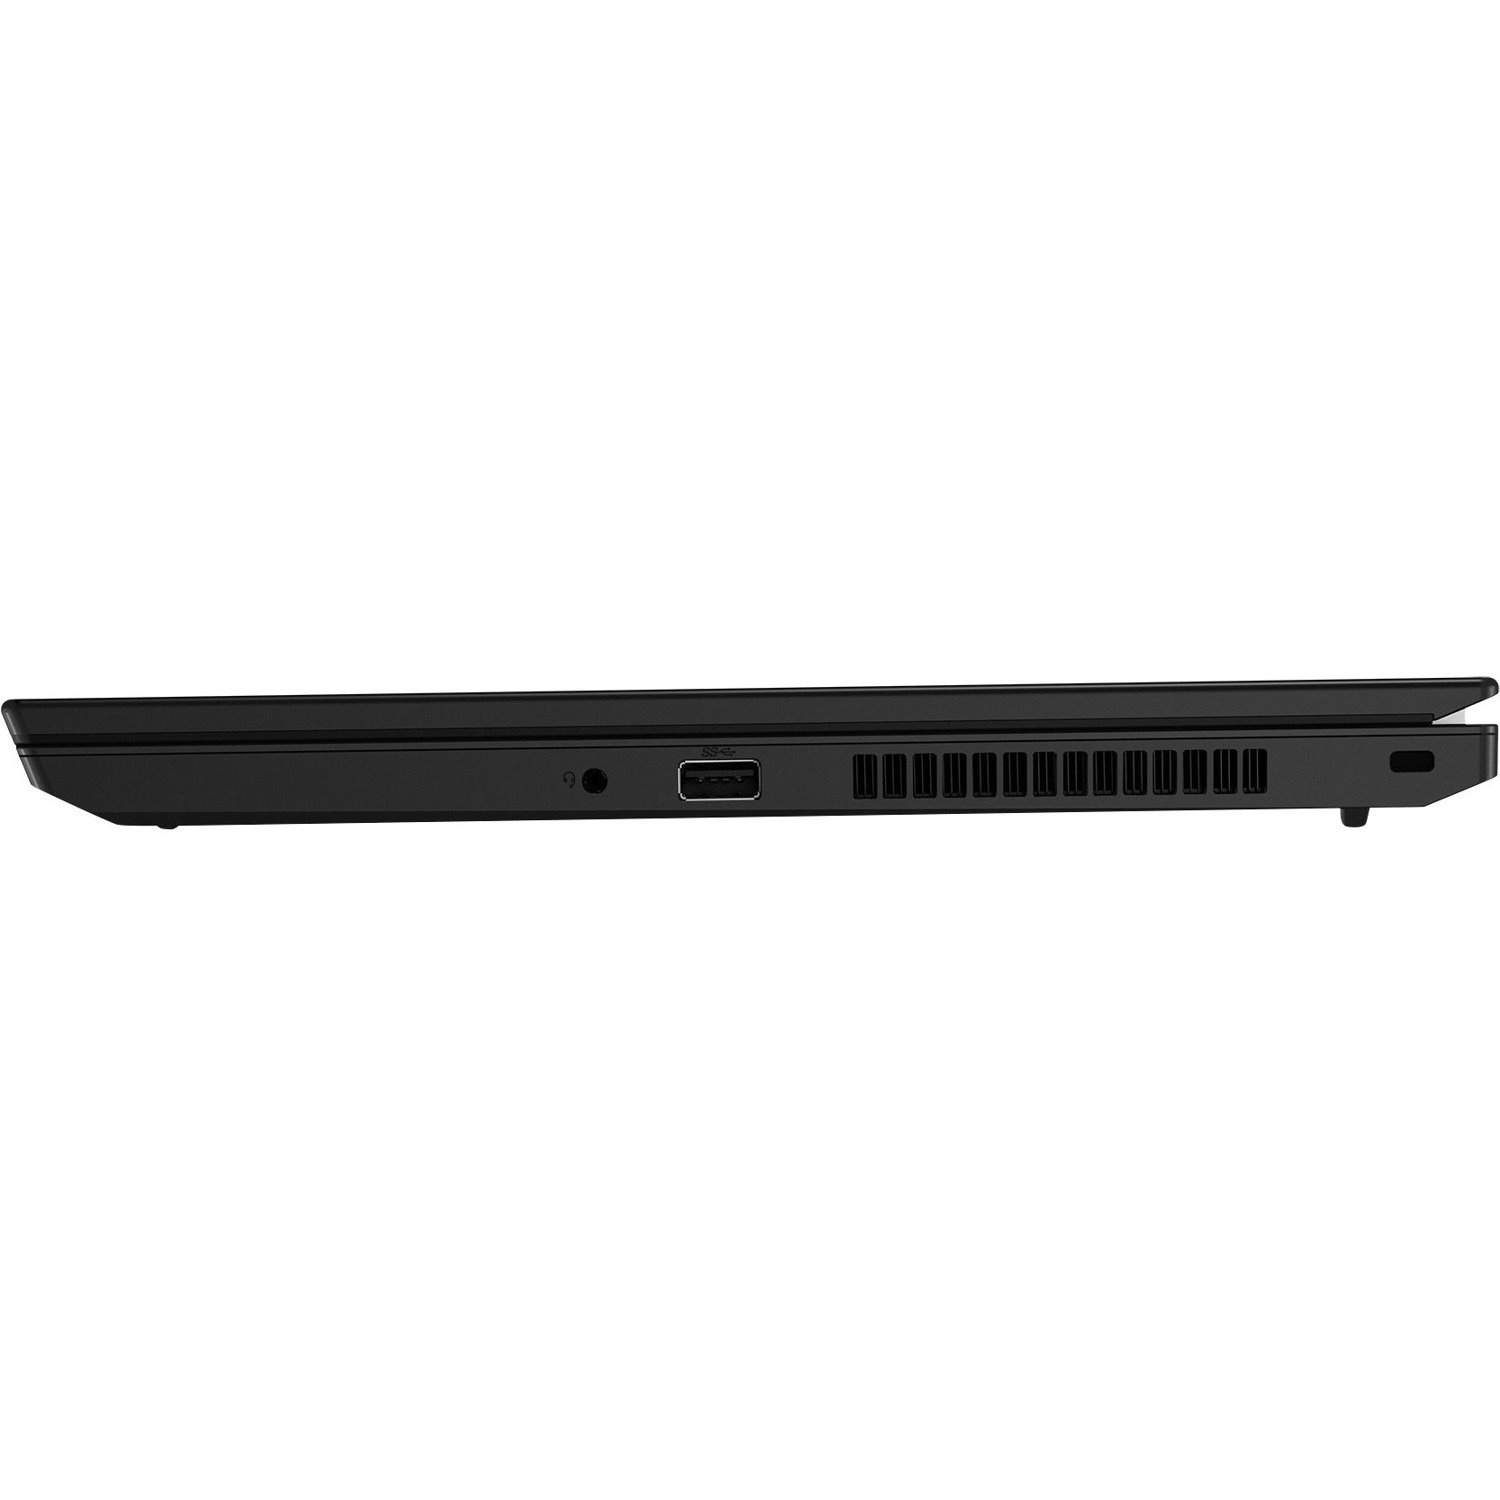 Lenovo ThinkPad L15 Gen2 20X3005UAU 39.6 cm (15.6") Notebook - Full HD - 1920 x 1080 - Intel Core i5 11th Gen i5-1135G7 Quad-core (4 Core) 2.40 GHz - 8 GB Total RAM - 256 GB SSD - Black